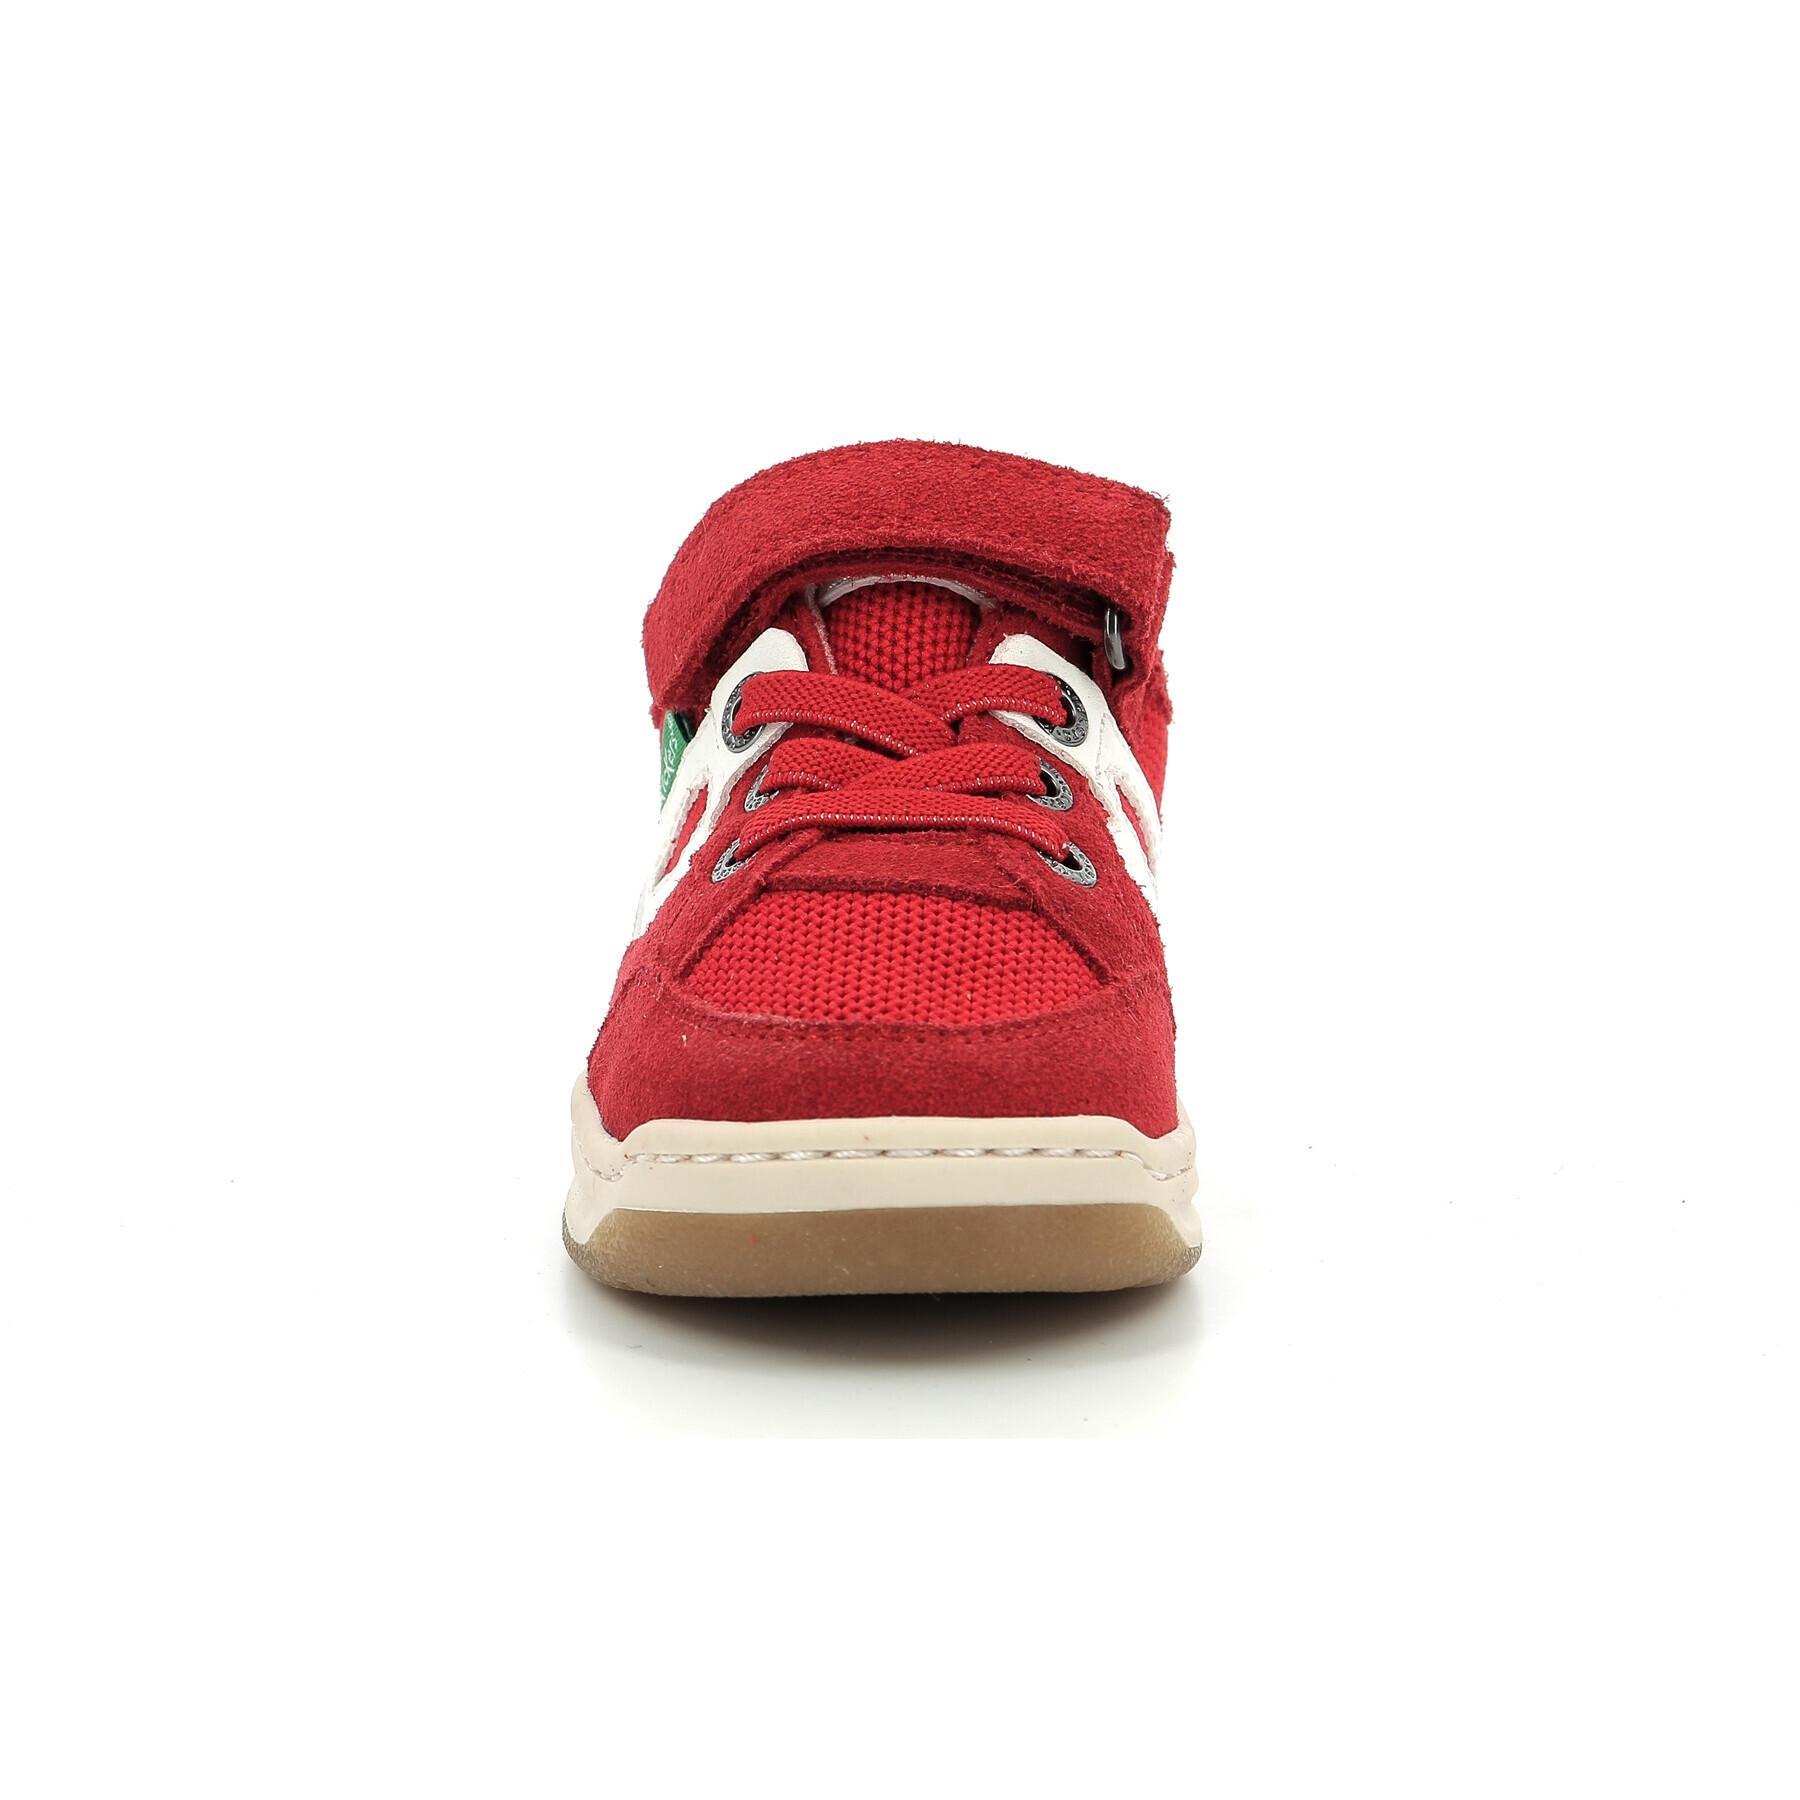 Baby boy sneakers Kickers Kikouak